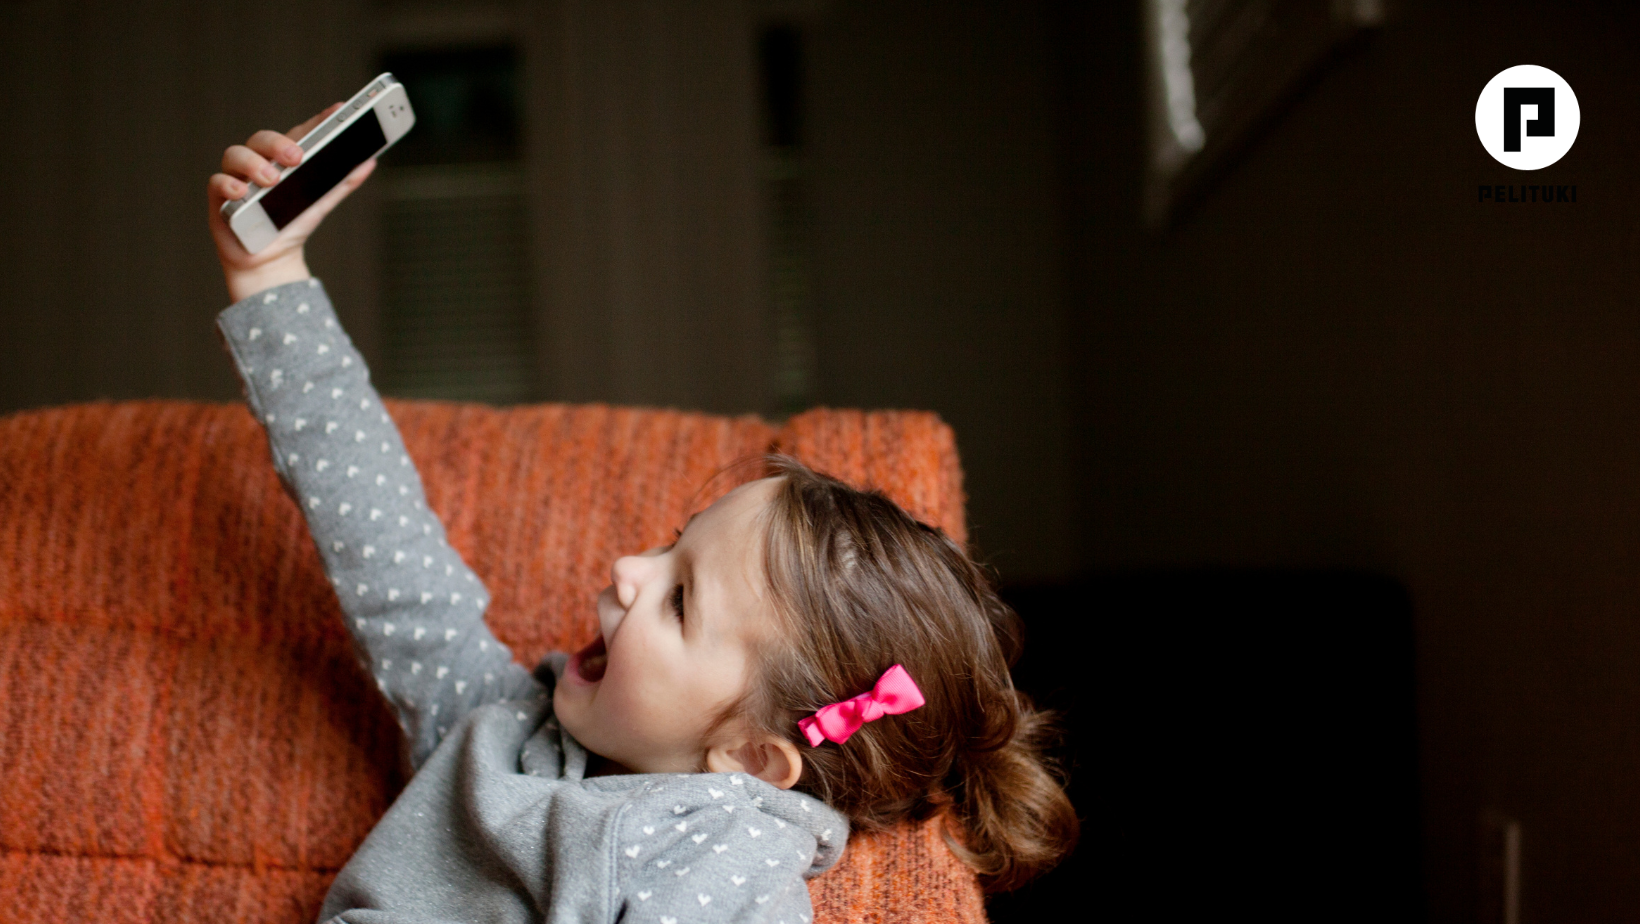 Pieni tyttö lepää sohvalla ja pitelee kädessään korkealla älypuhelinta, jota kohti hän katsoo iloisena